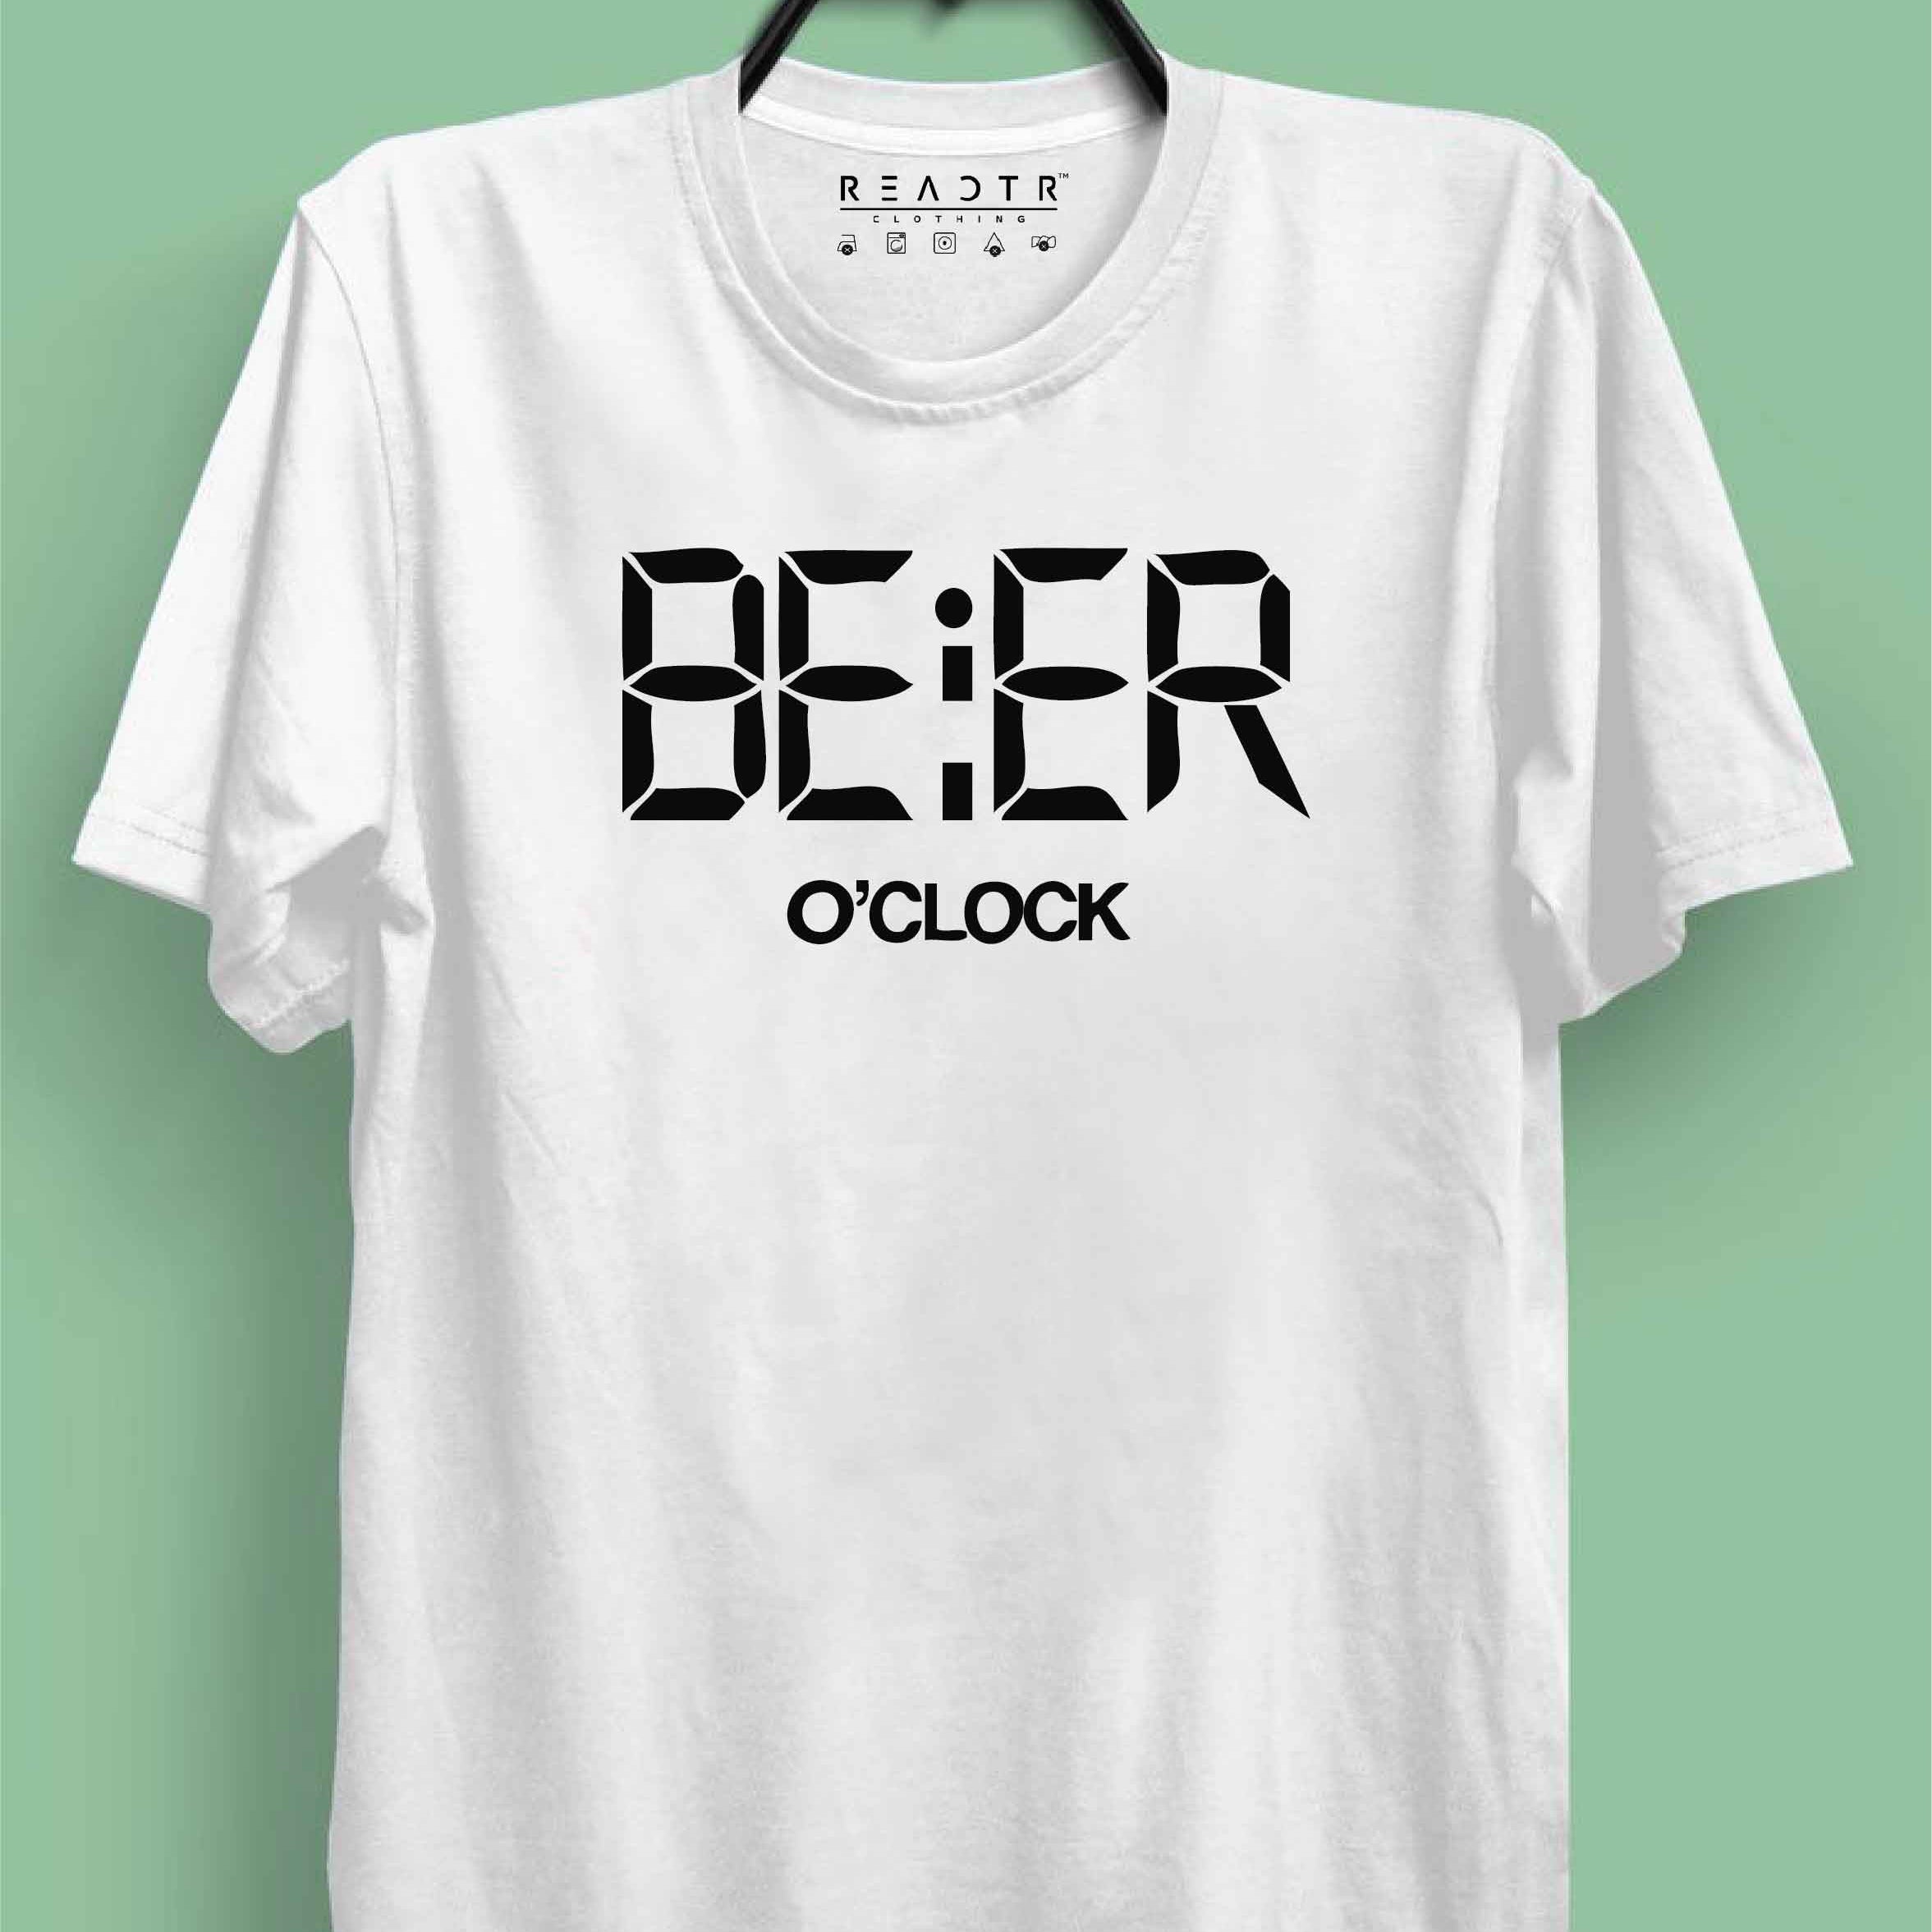 BEER O CLOCK Reactr Tshirts For Men - Eyewearlabs